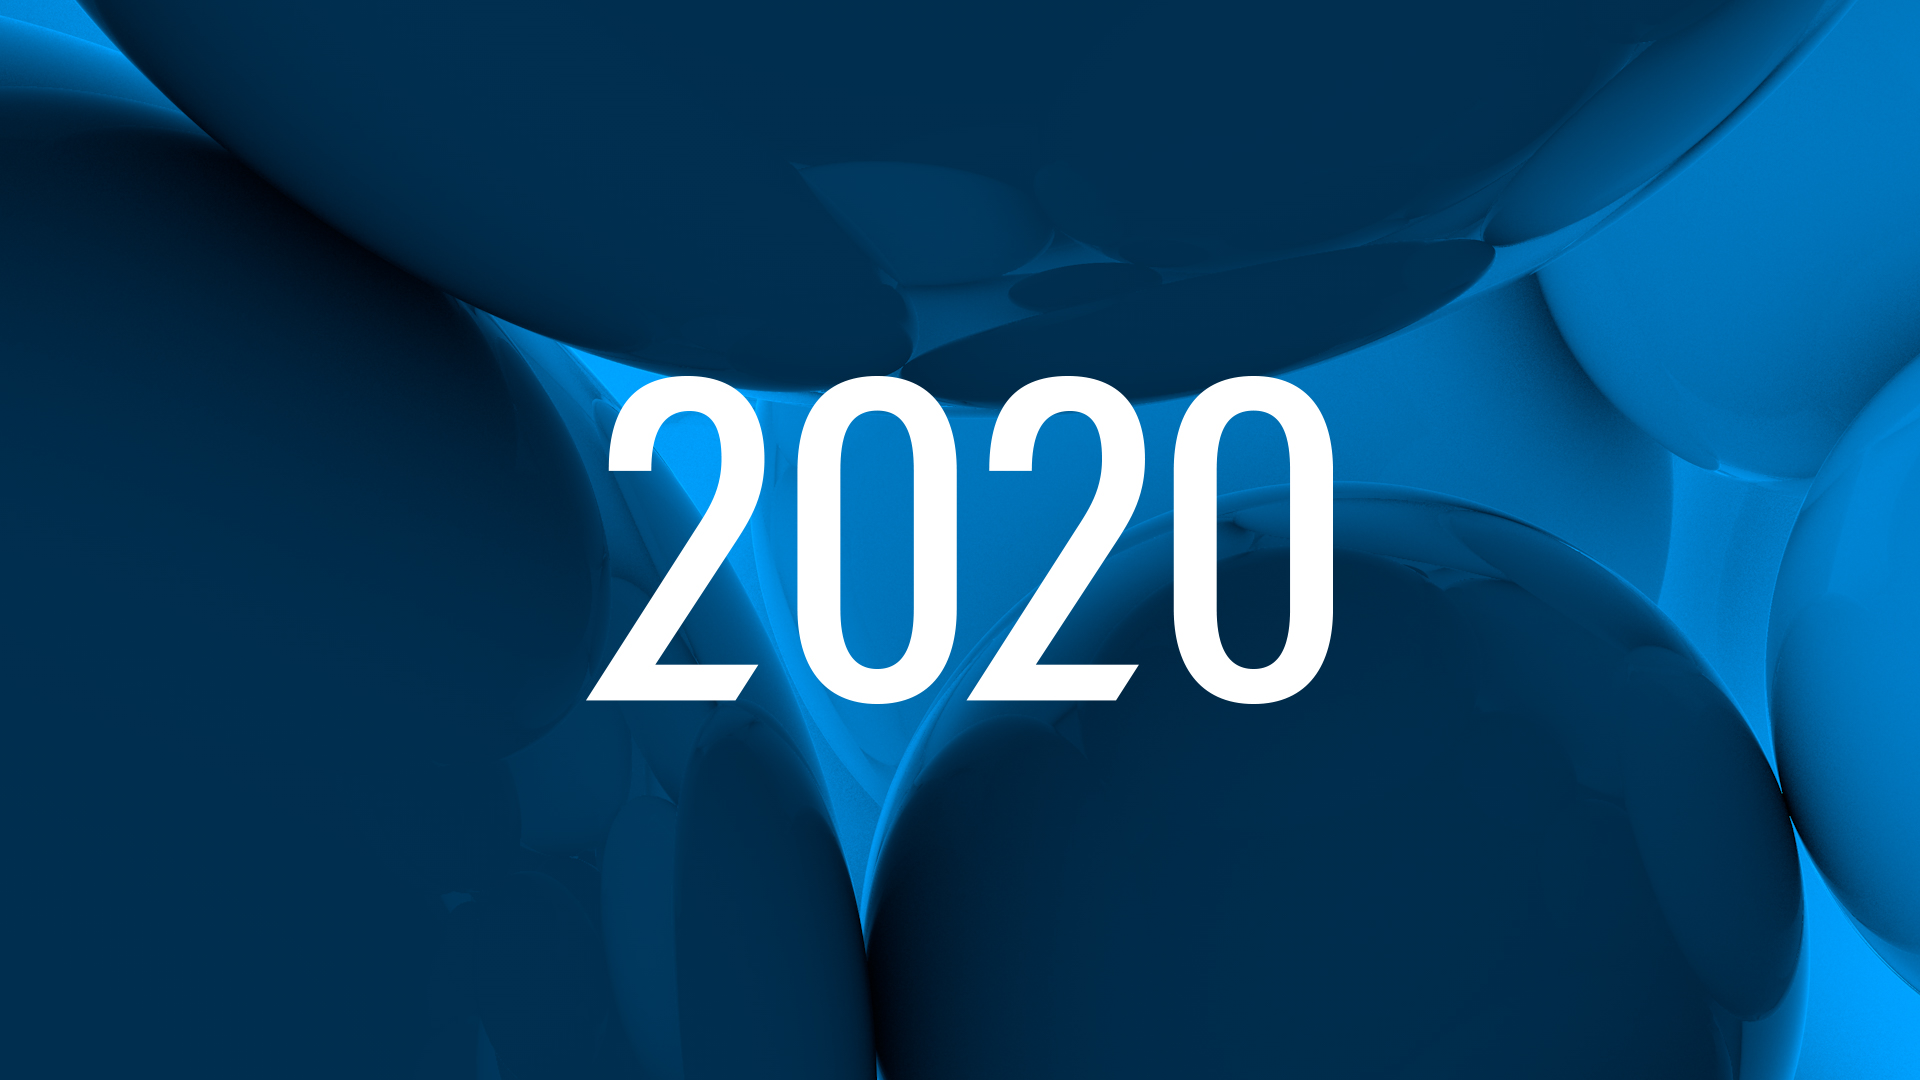 Nine in 2020